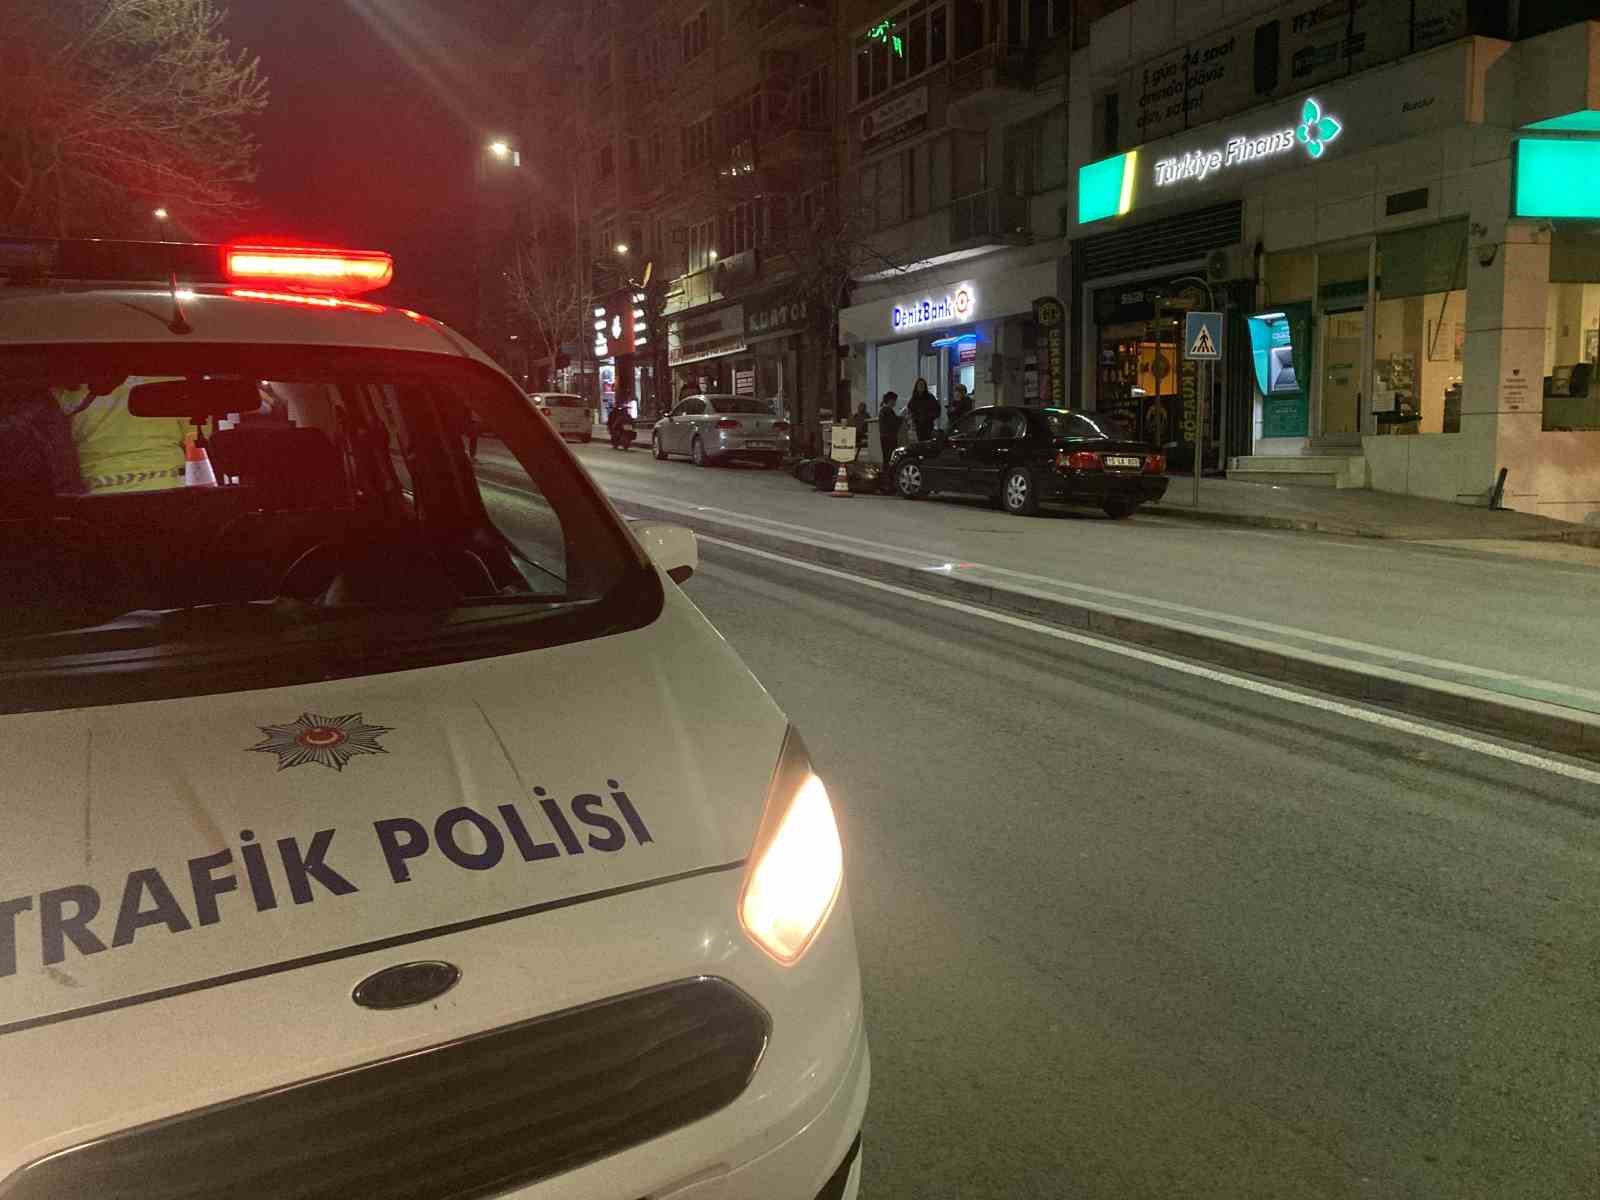 Burdur’da otomobile çarpıp sürüklenen motosikletli genç ağır yaralandı
